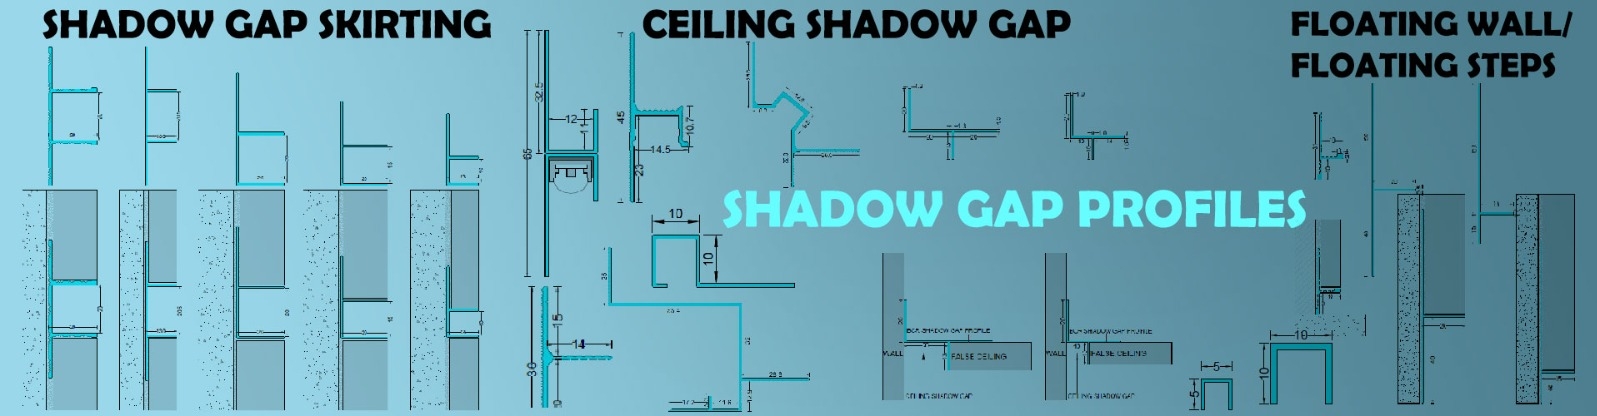 Shadow Gap Profiles